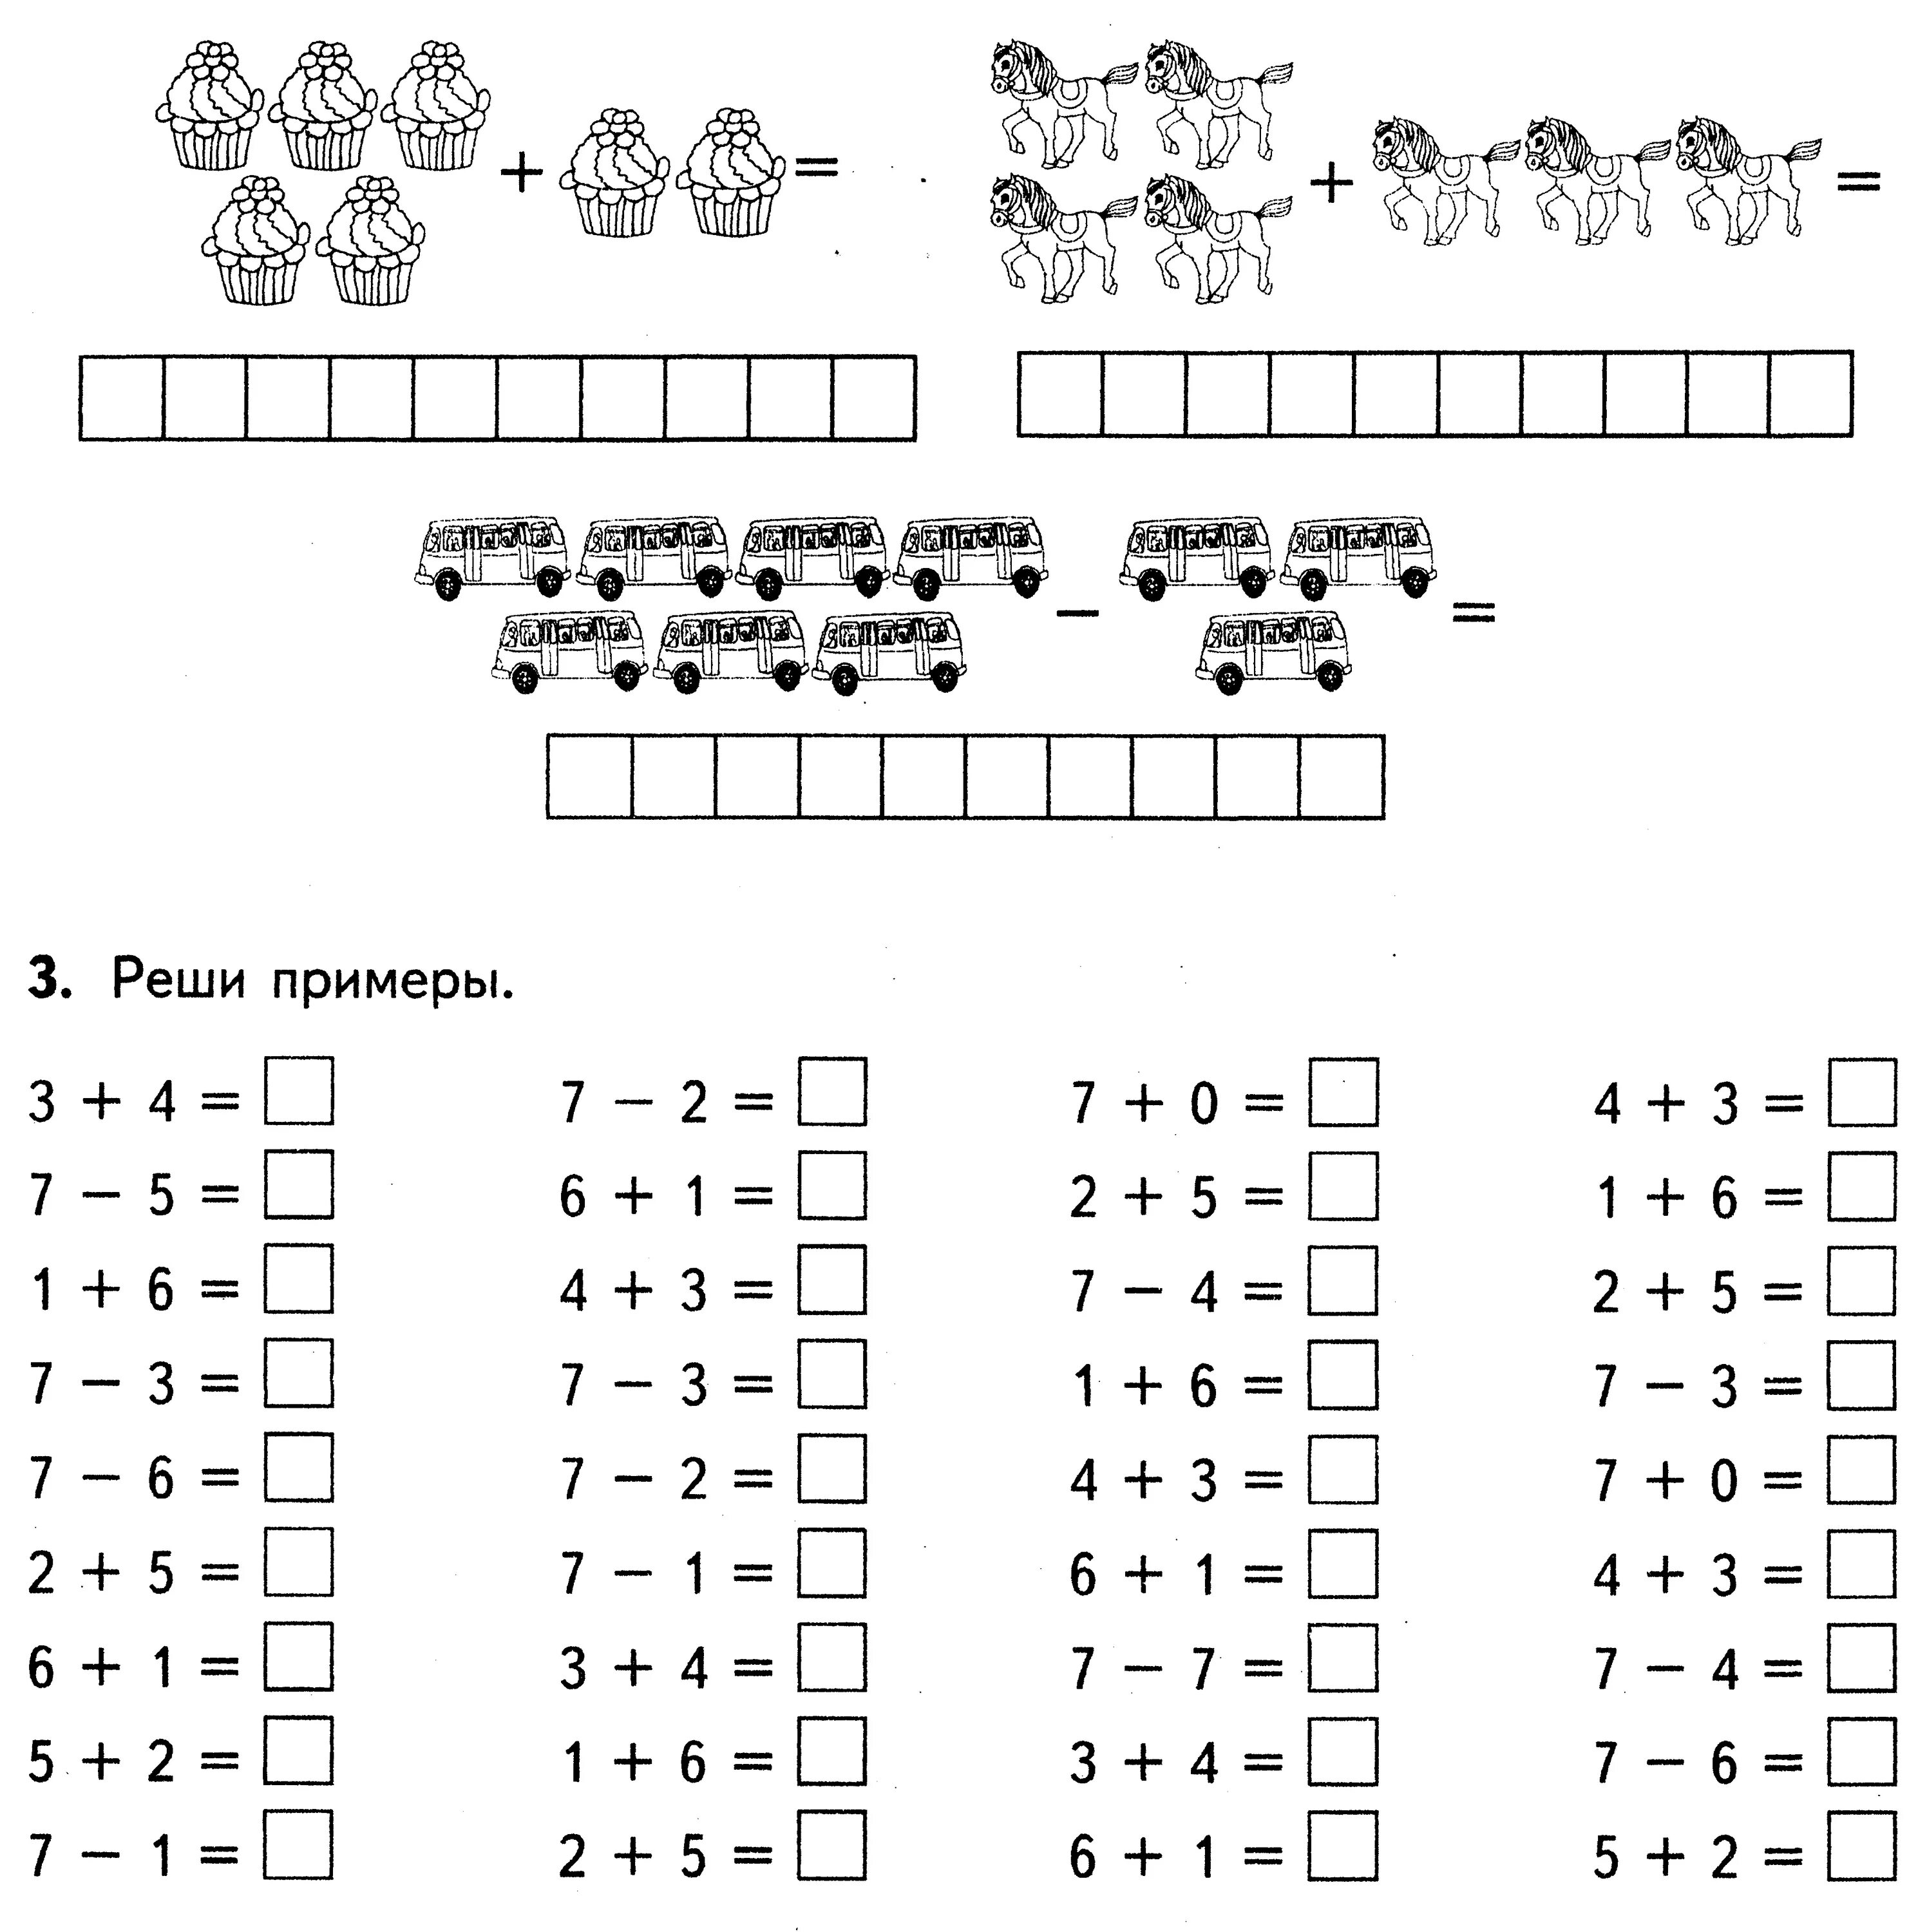 Решить примеры первого класса. Карточки задания по математике 1 класс школа России. Состав числа в пределах 7 примеры. Состав числа сложение и вычитание до 10. Математика состав чисел до 10 задания.